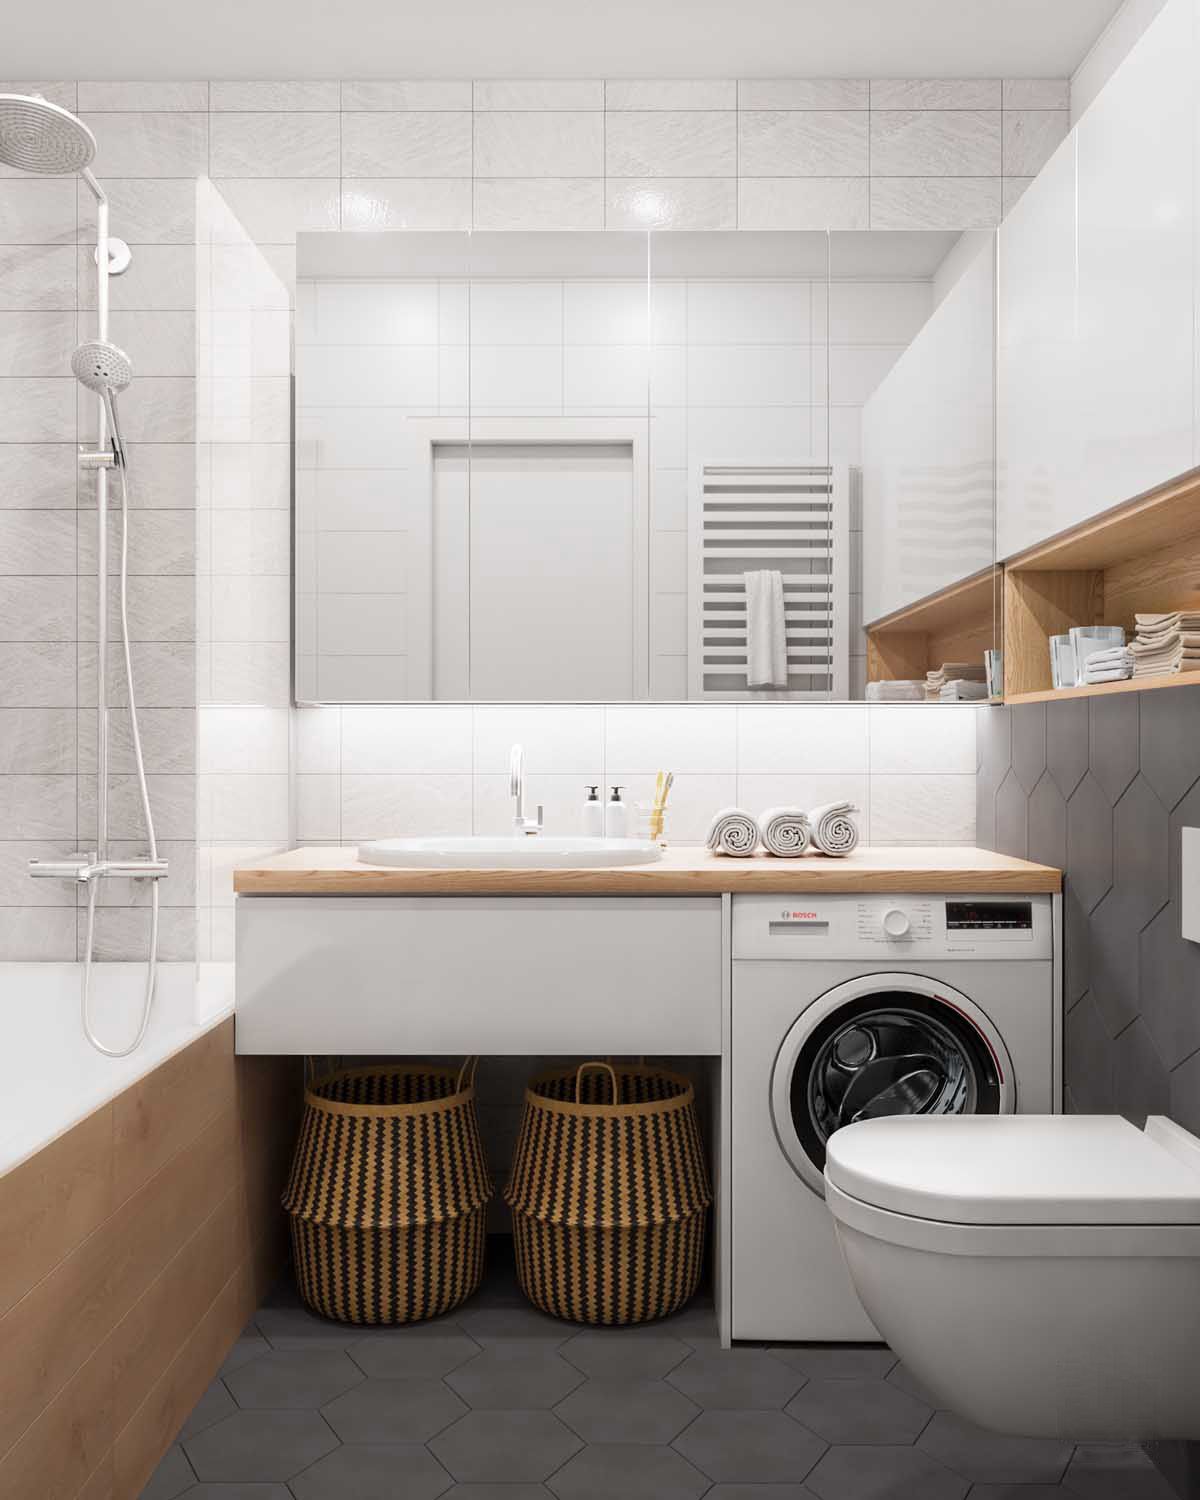 Khu vực bên dưới tủ vanity trong phòng tắm cũng là vị trí tuyệt vời để bạn có thể đặt một chiếc máy giặt cửa trước mà không tốn quá nhiều diện tích sàn. Bên cạnh nó có thể bổ sung vài chiếc giỏ phân loại đồ đạc để giặt giũ.